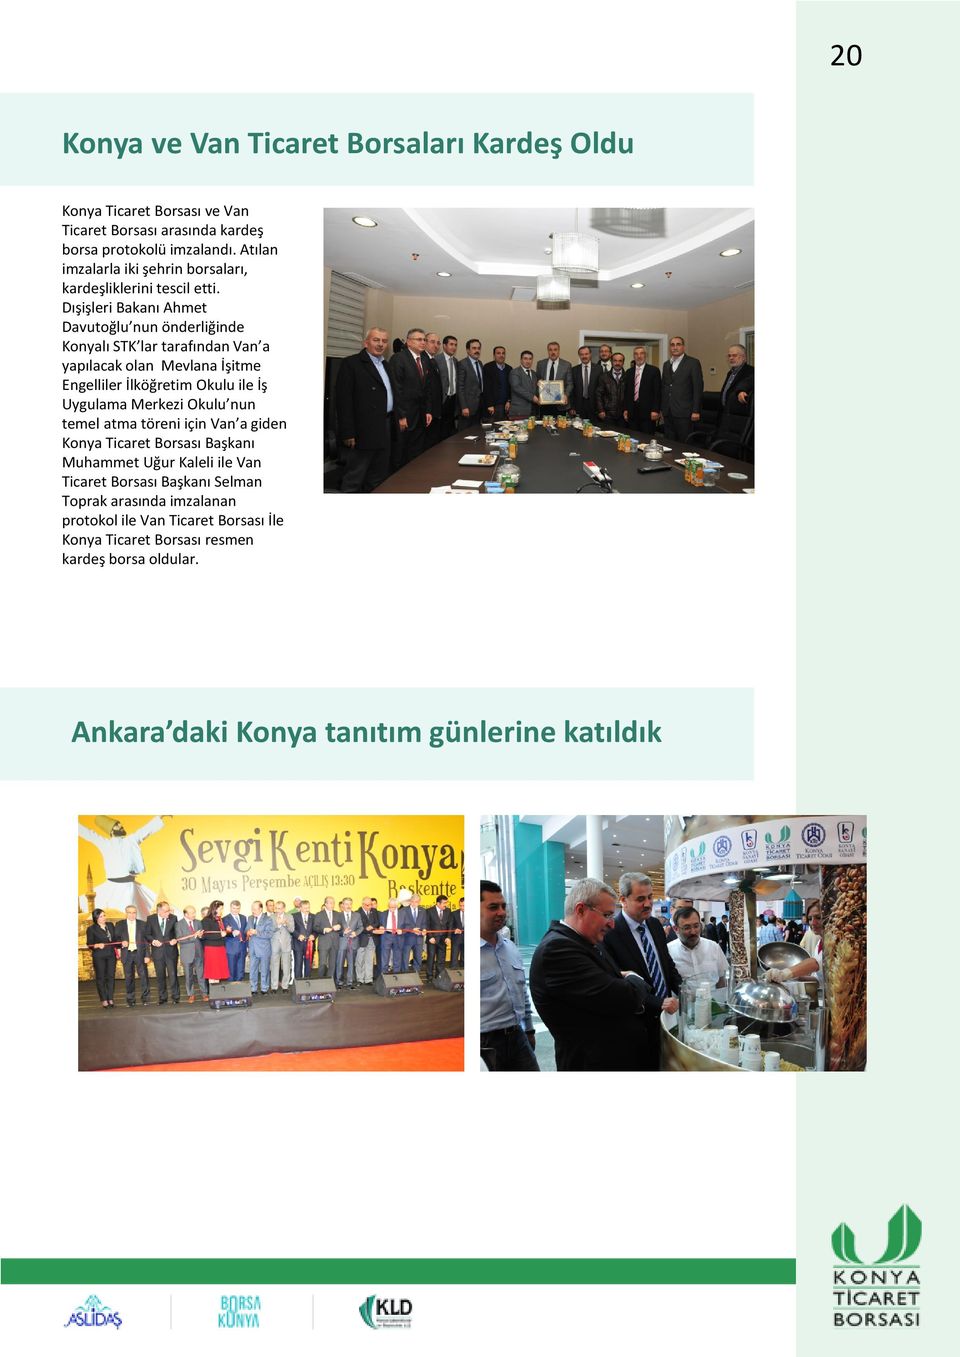 Dışişleri Bakanı Ahmet Davutoğlu nun önderliğinde Konyalı STK lar tarafından Van a yapılacak olan Mevlana İşitme Engelliler İlköğretim Okulu ile İş Uygulama Merkezi